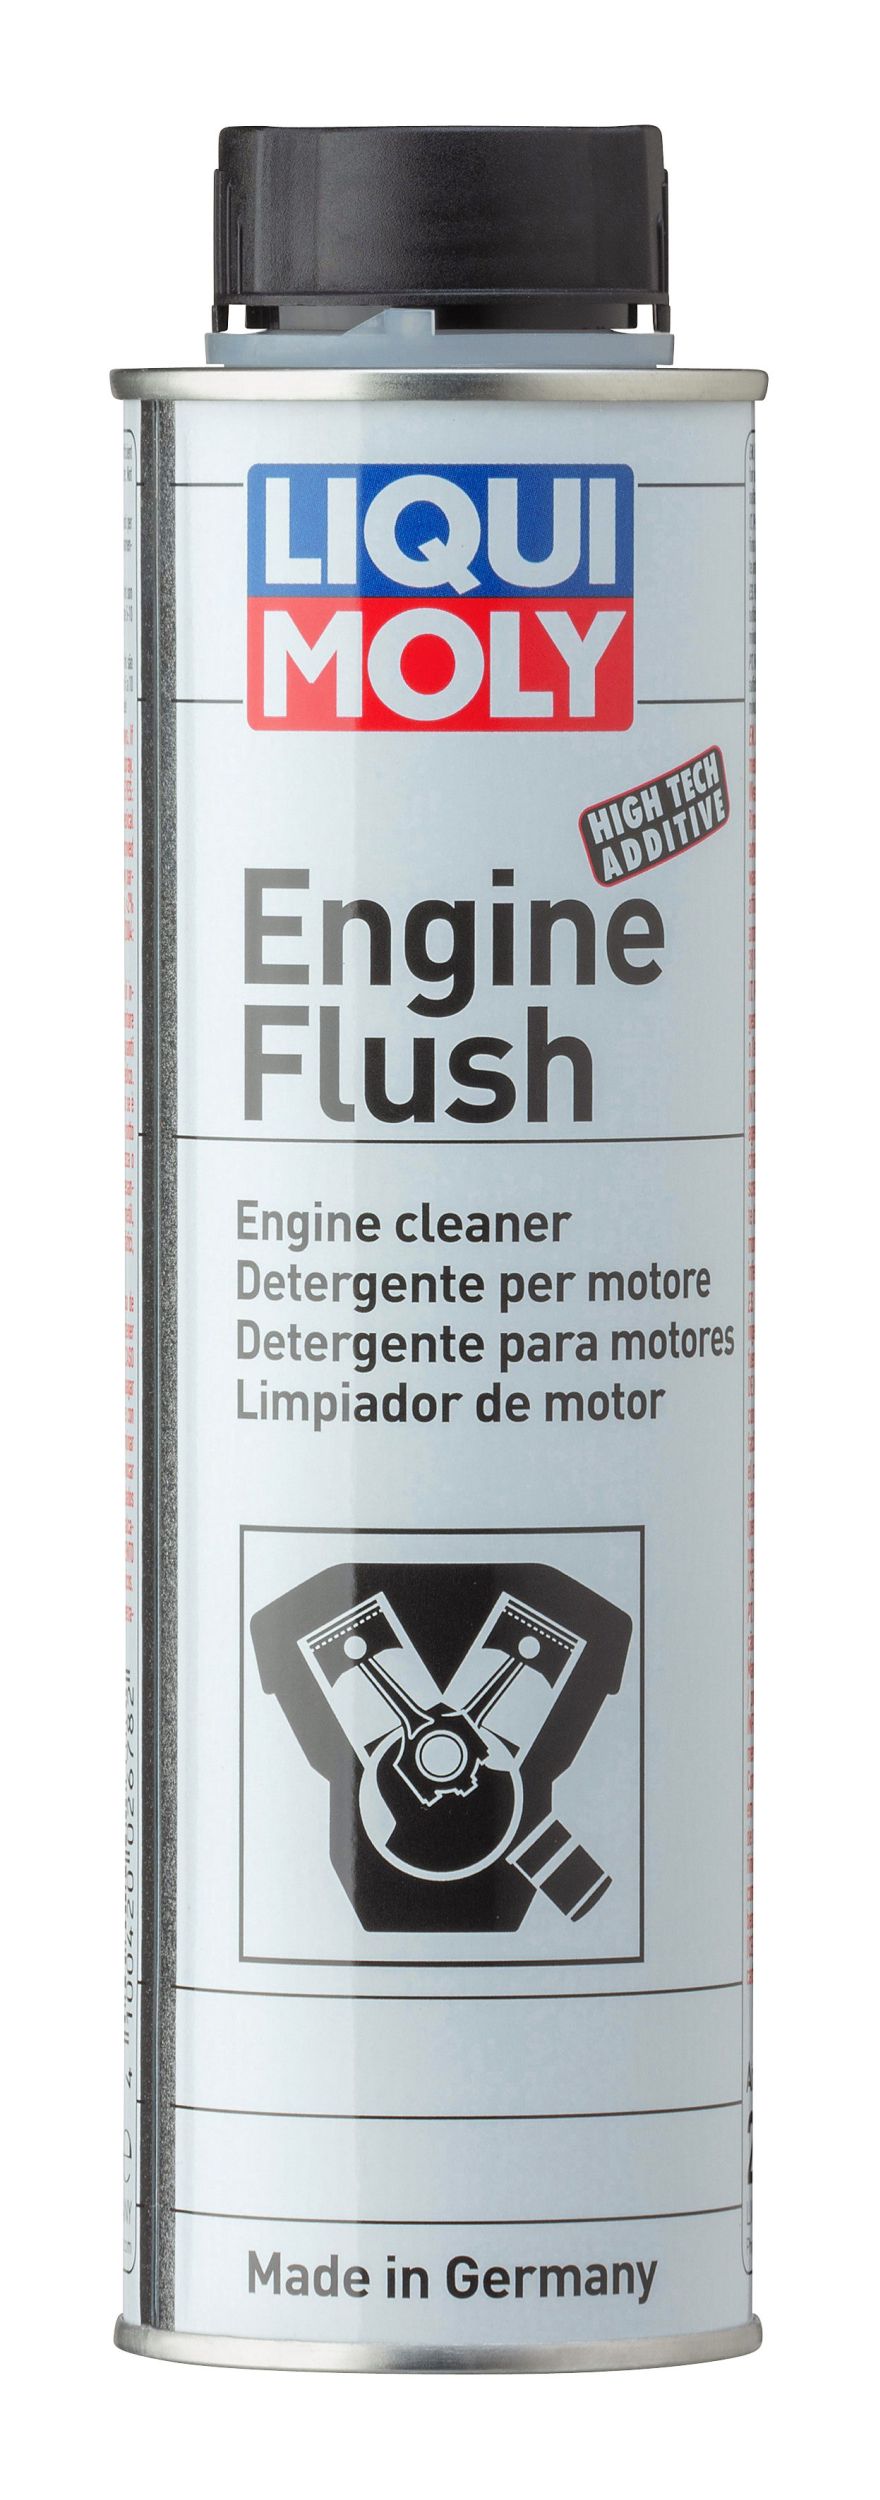 Liqui Moly Aditivo Limpiador de Motor - Engine Flush Plus 300ml